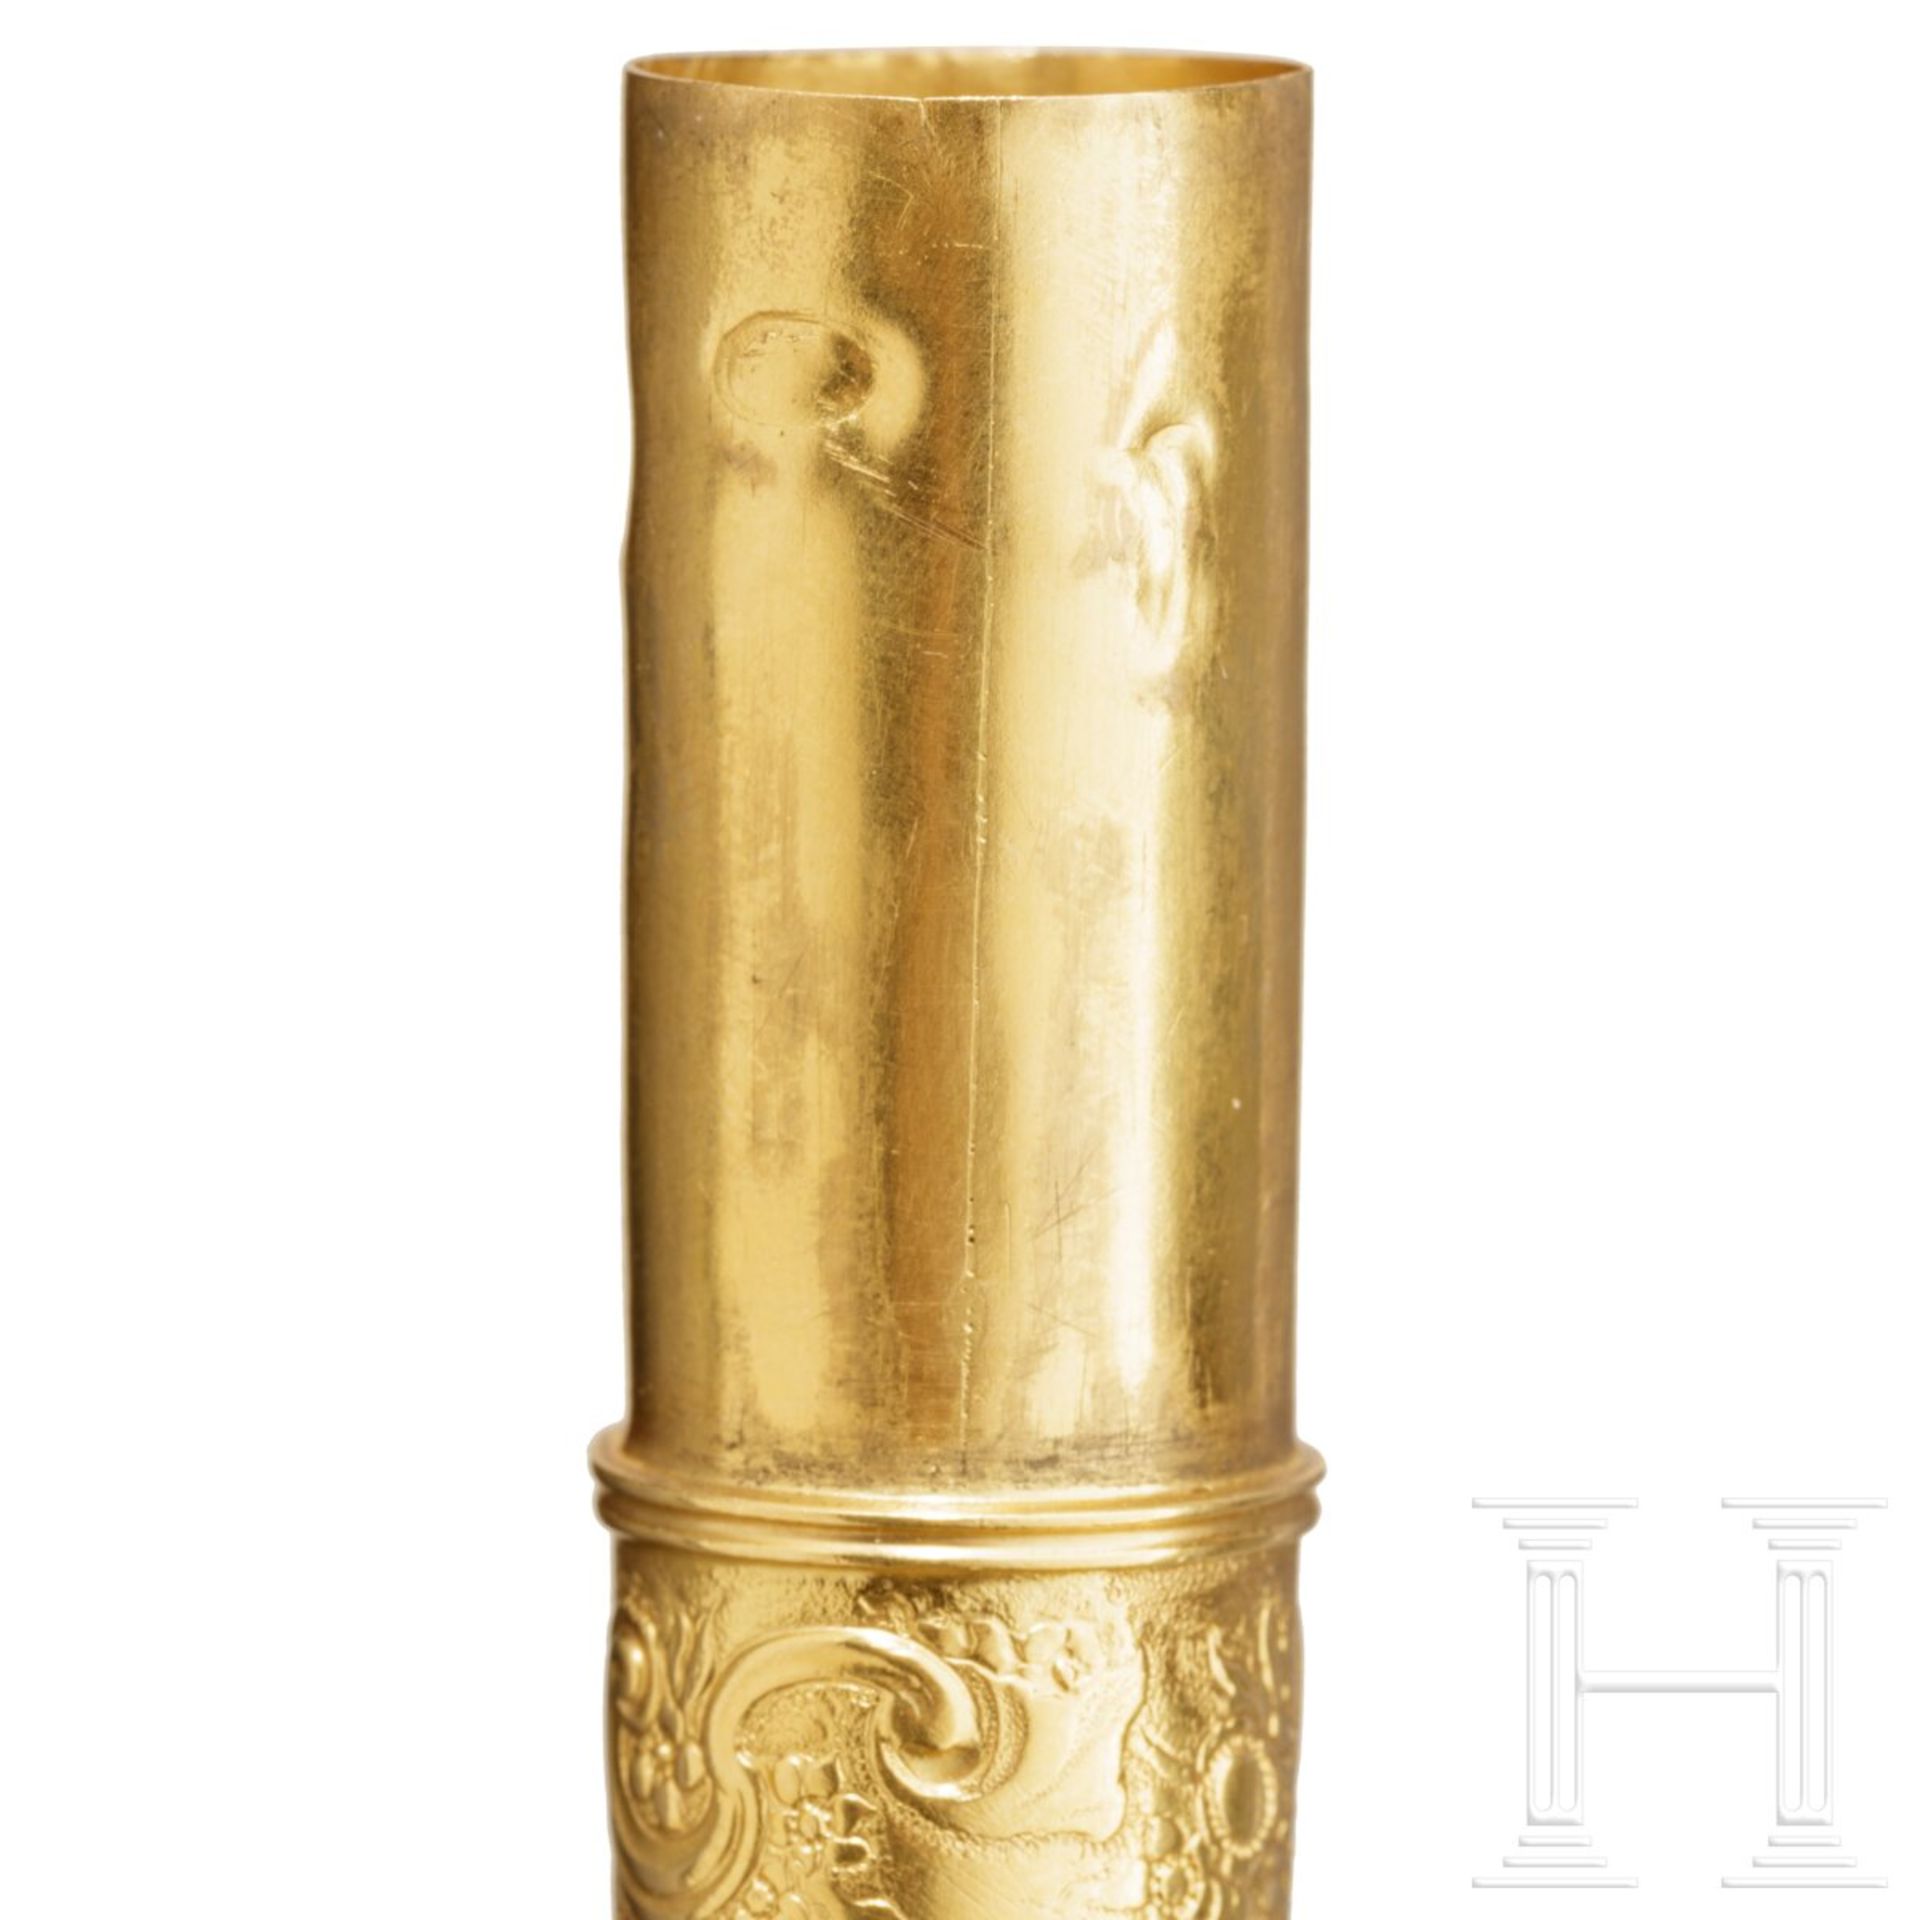 Goldener Siegellackbehälter, Frankreich, um 1760 - Image 4 of 5